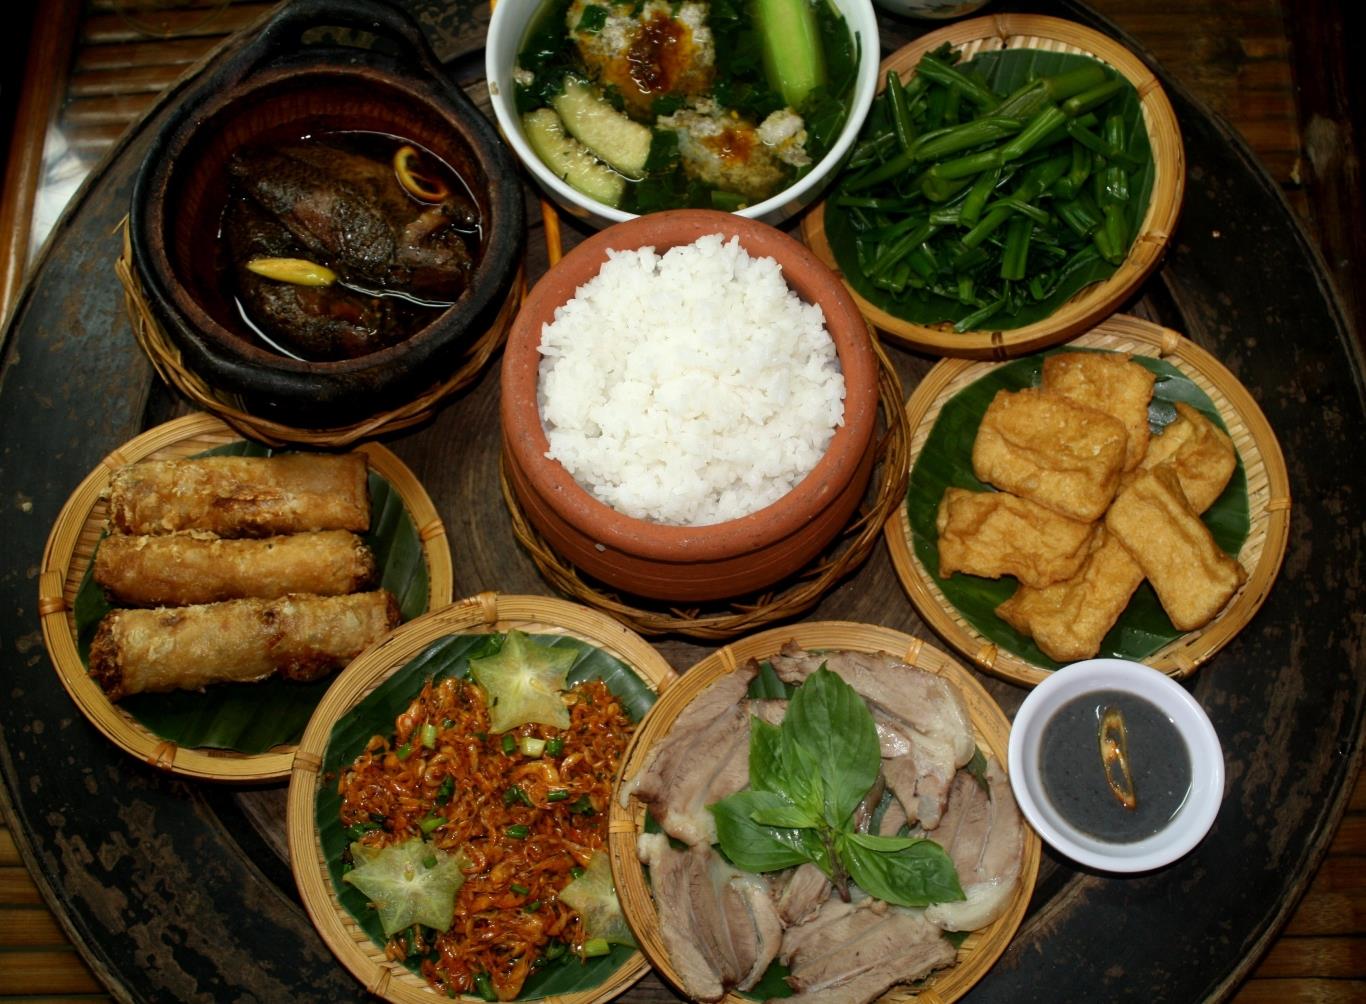 Văn hóa thưởng thức trên bàn ăn của các nước châu Á | VIETRAVEL ...